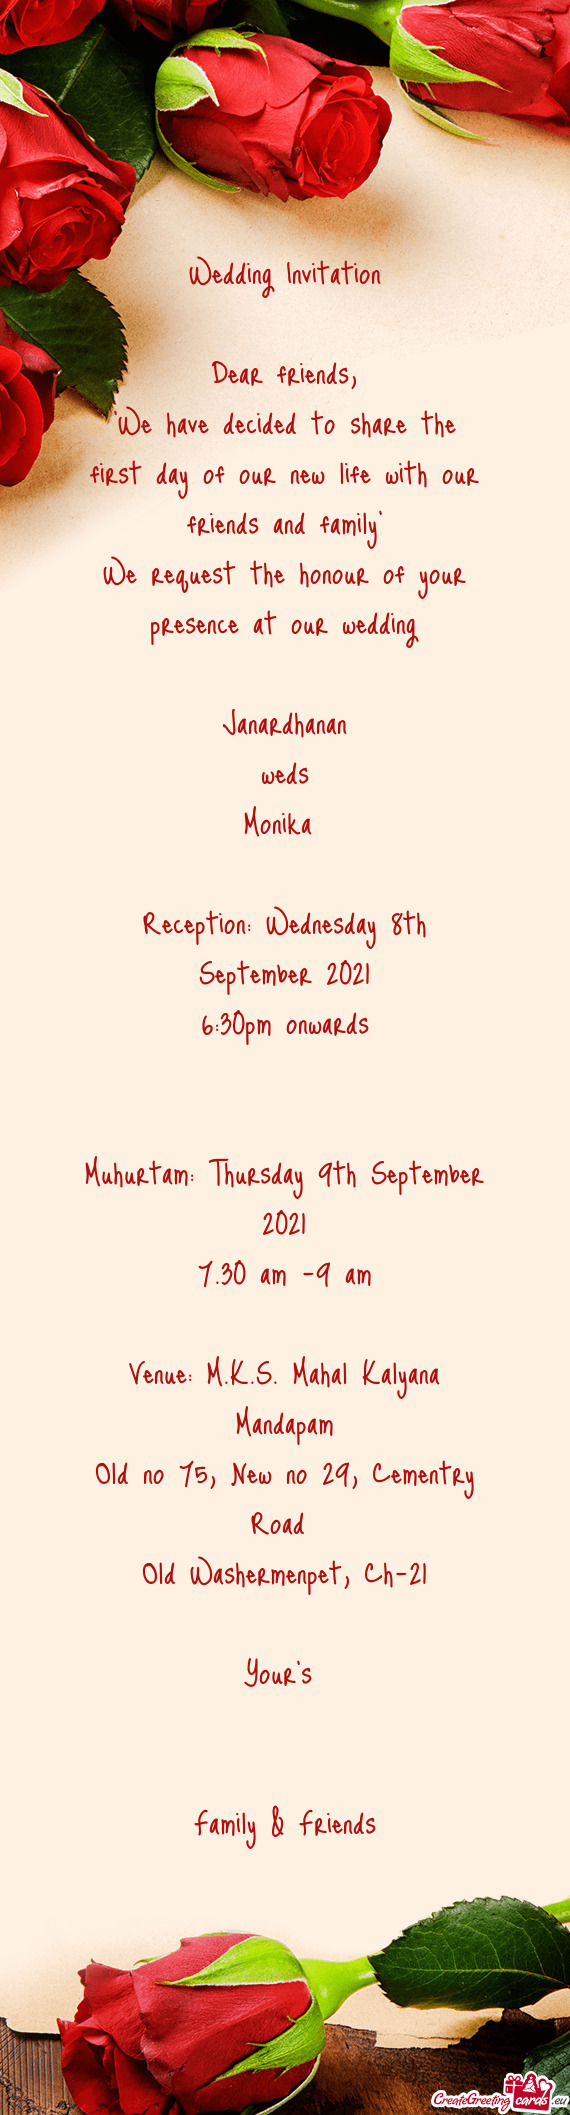 Muhurtam: Thursday 9th September 2021